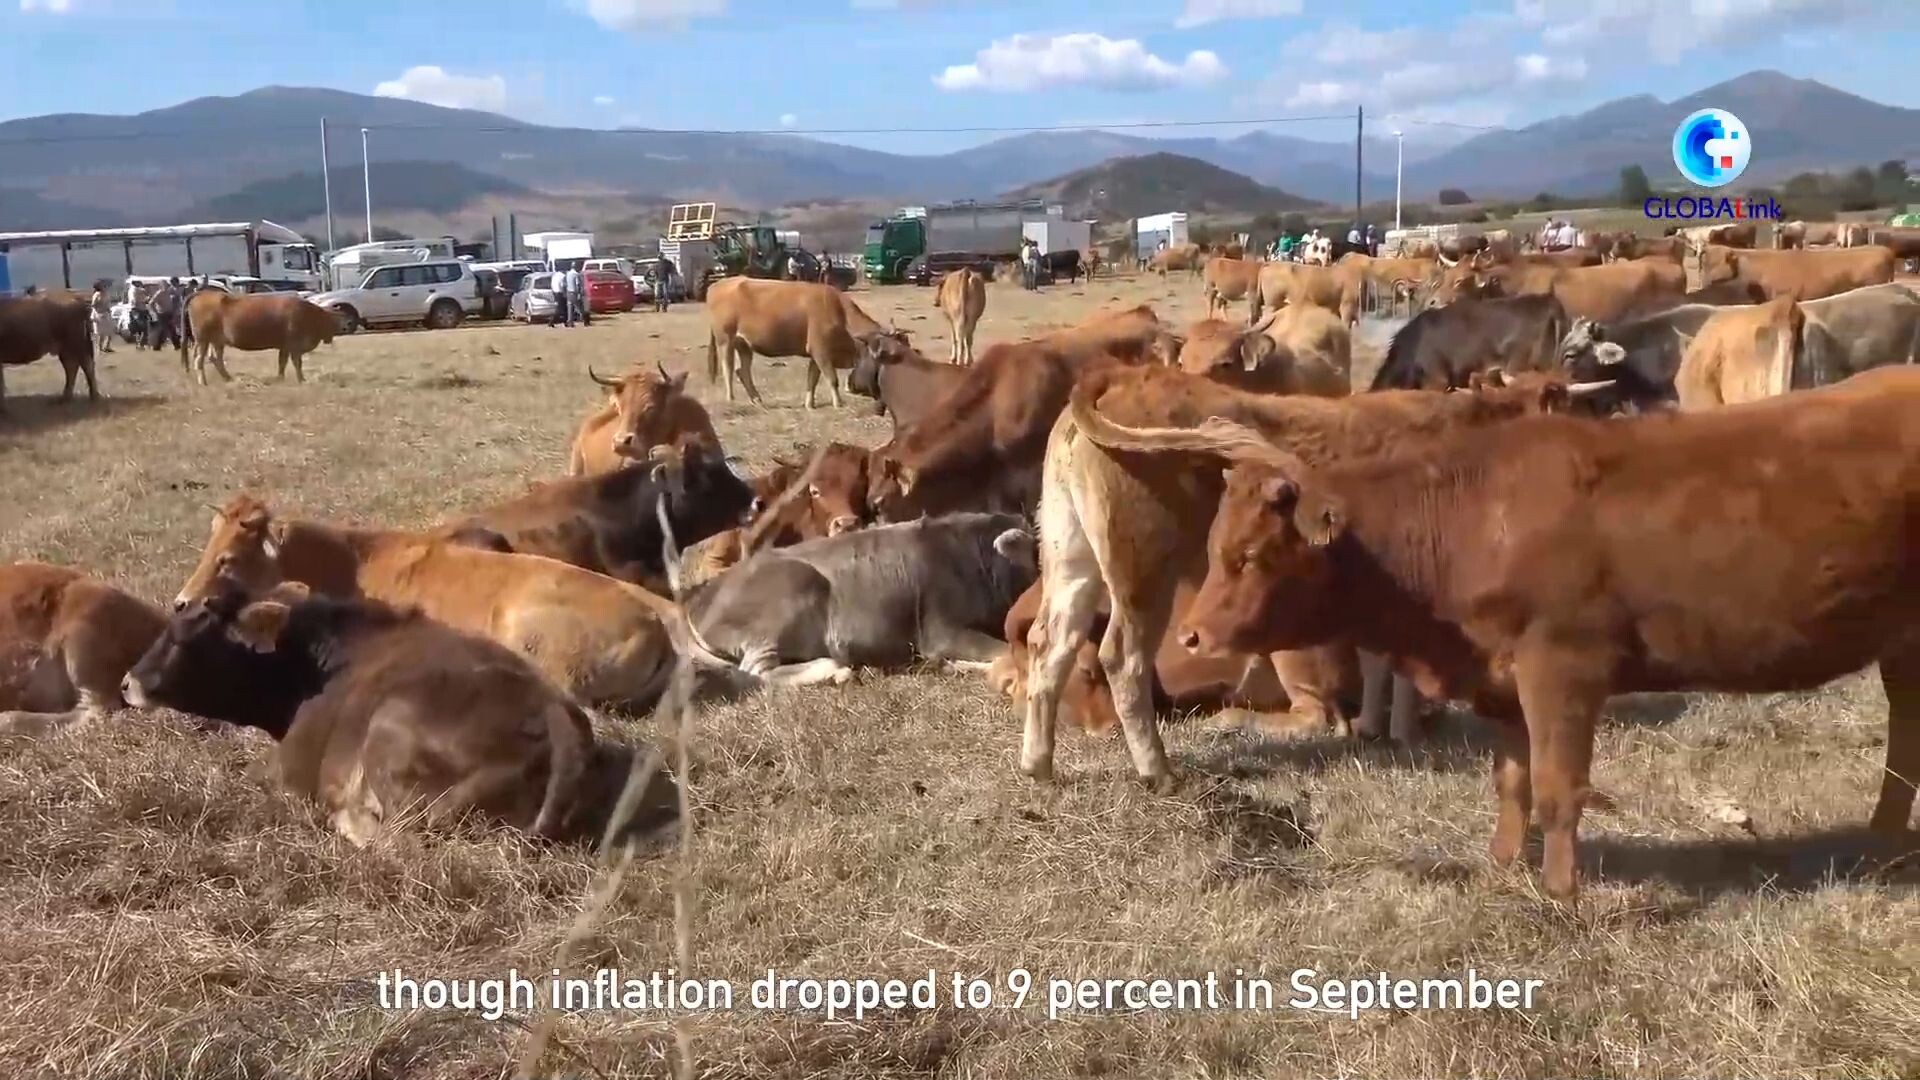 GLOBALink : ภาวะราคาพุ่งกระทบ 'เกษตรกรเลี้ยงสัตว์' ในสเปน